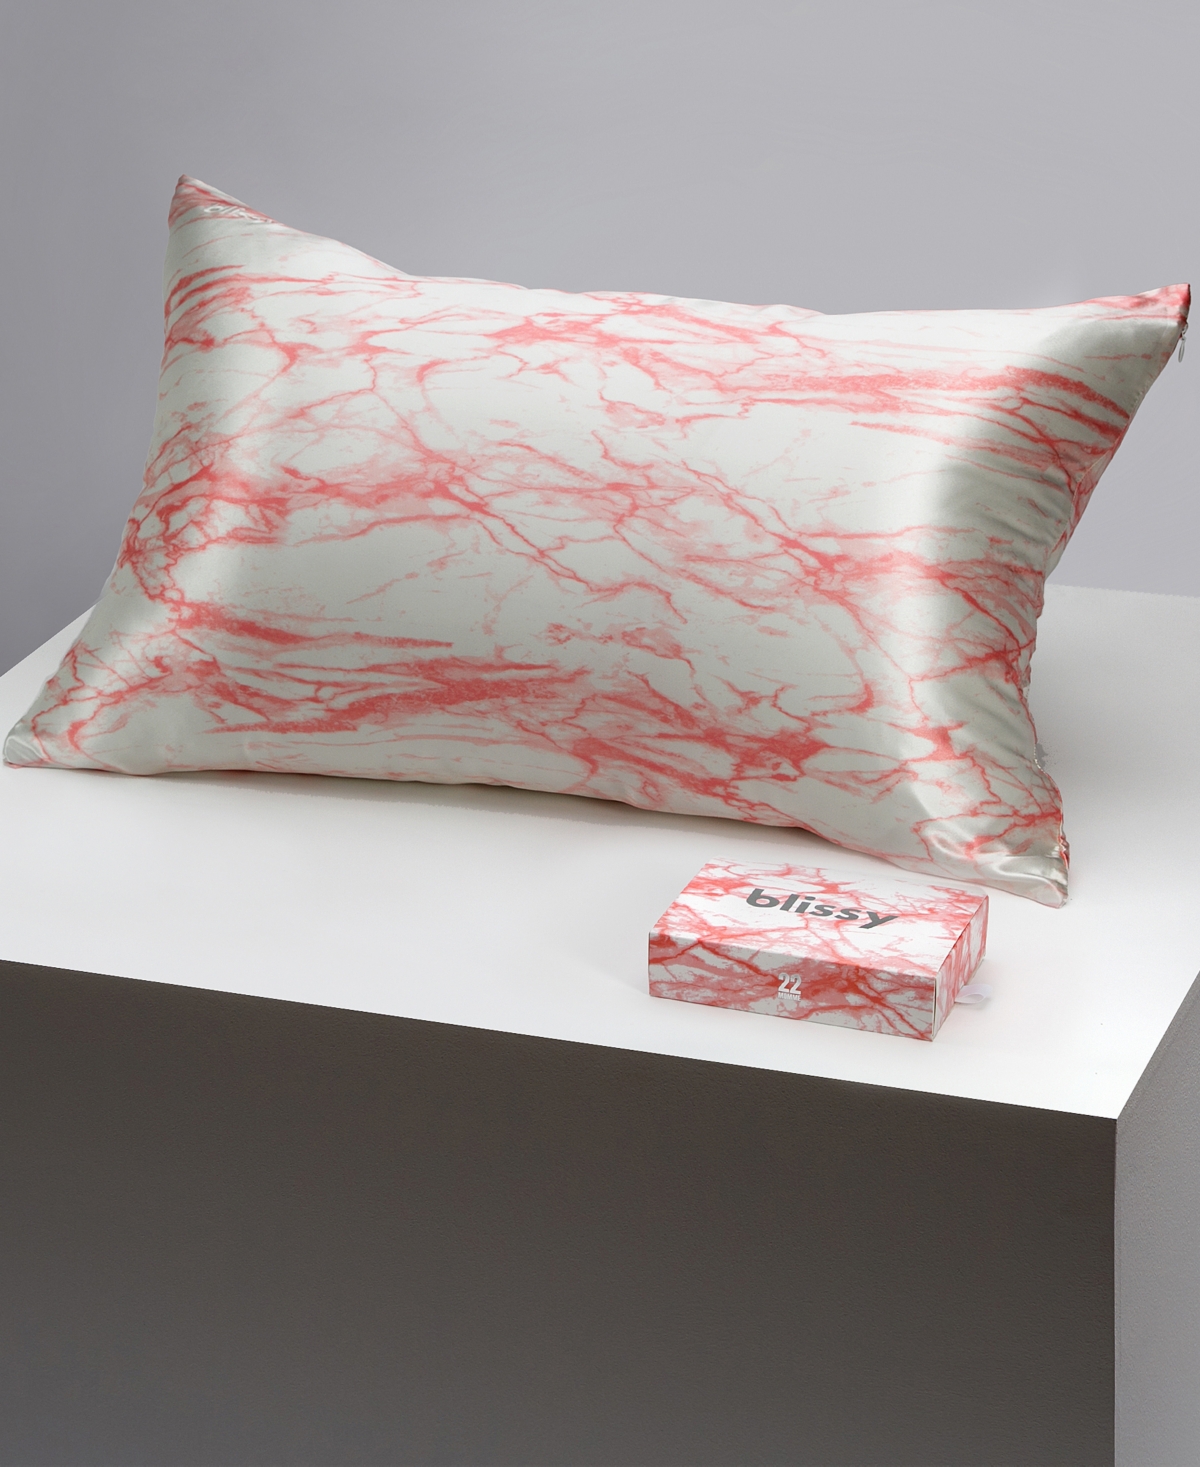 Blissy 22-momme Silk Pillowcase, King In Rose White Marble